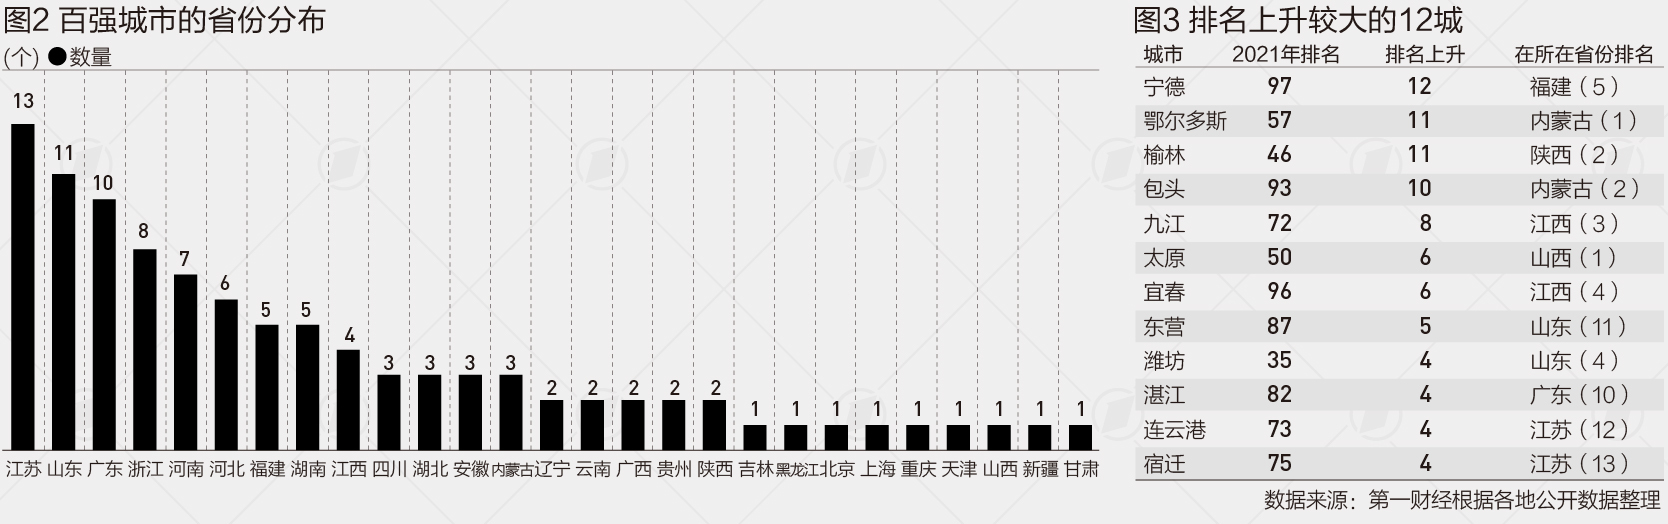 武漢人均gdp_武漢常住人口猛增百萬重回中部第一,長沙人均GDP還是不如武漢